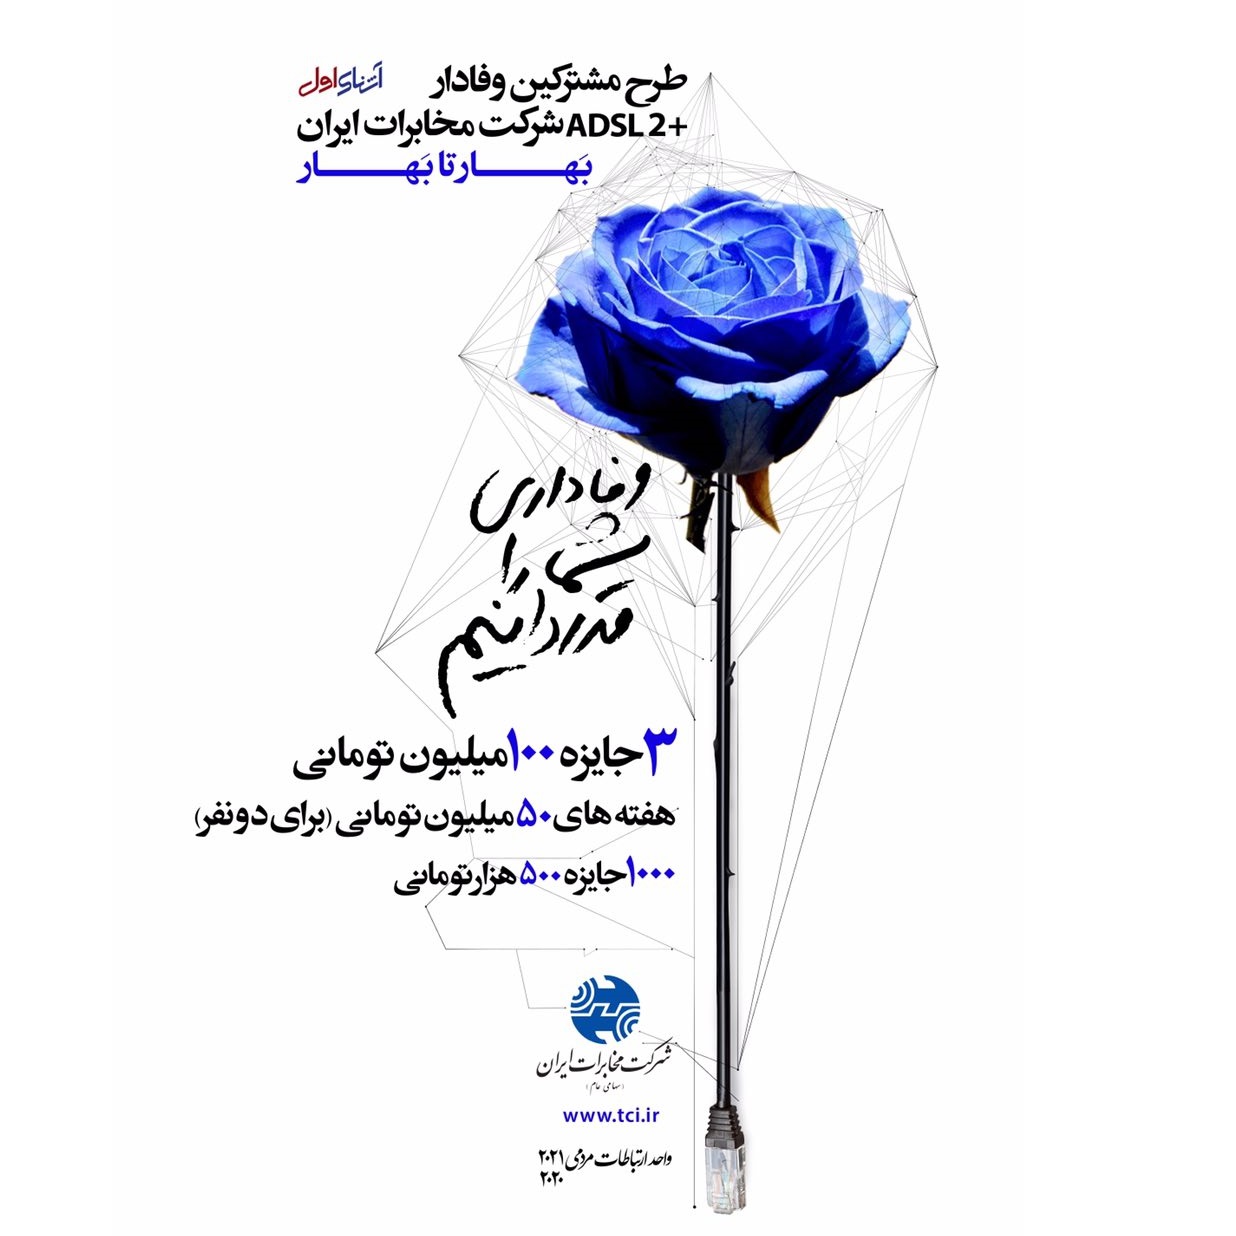 هر هفته ۲ جایزه ۲۵۰ میلیون ریالی و ۵۰ جایزه ۵ میلیون ریالی در طرح مشترکان وفادار اینترنت شرکت مخابرات ایران